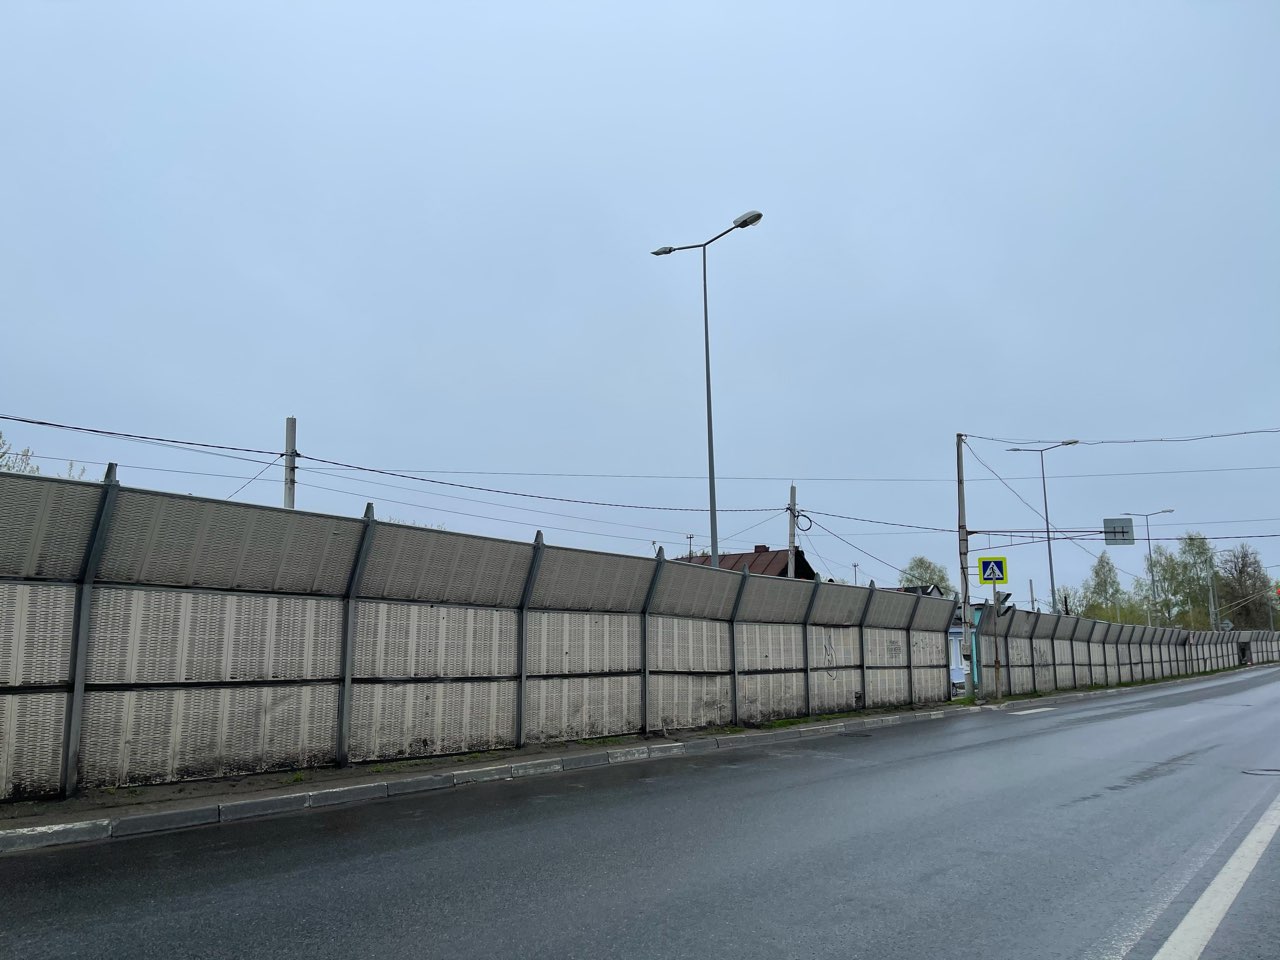 Трассу М-12 в Нижегородской области оградят экранами для безопасности серых журавлей  - фото 2